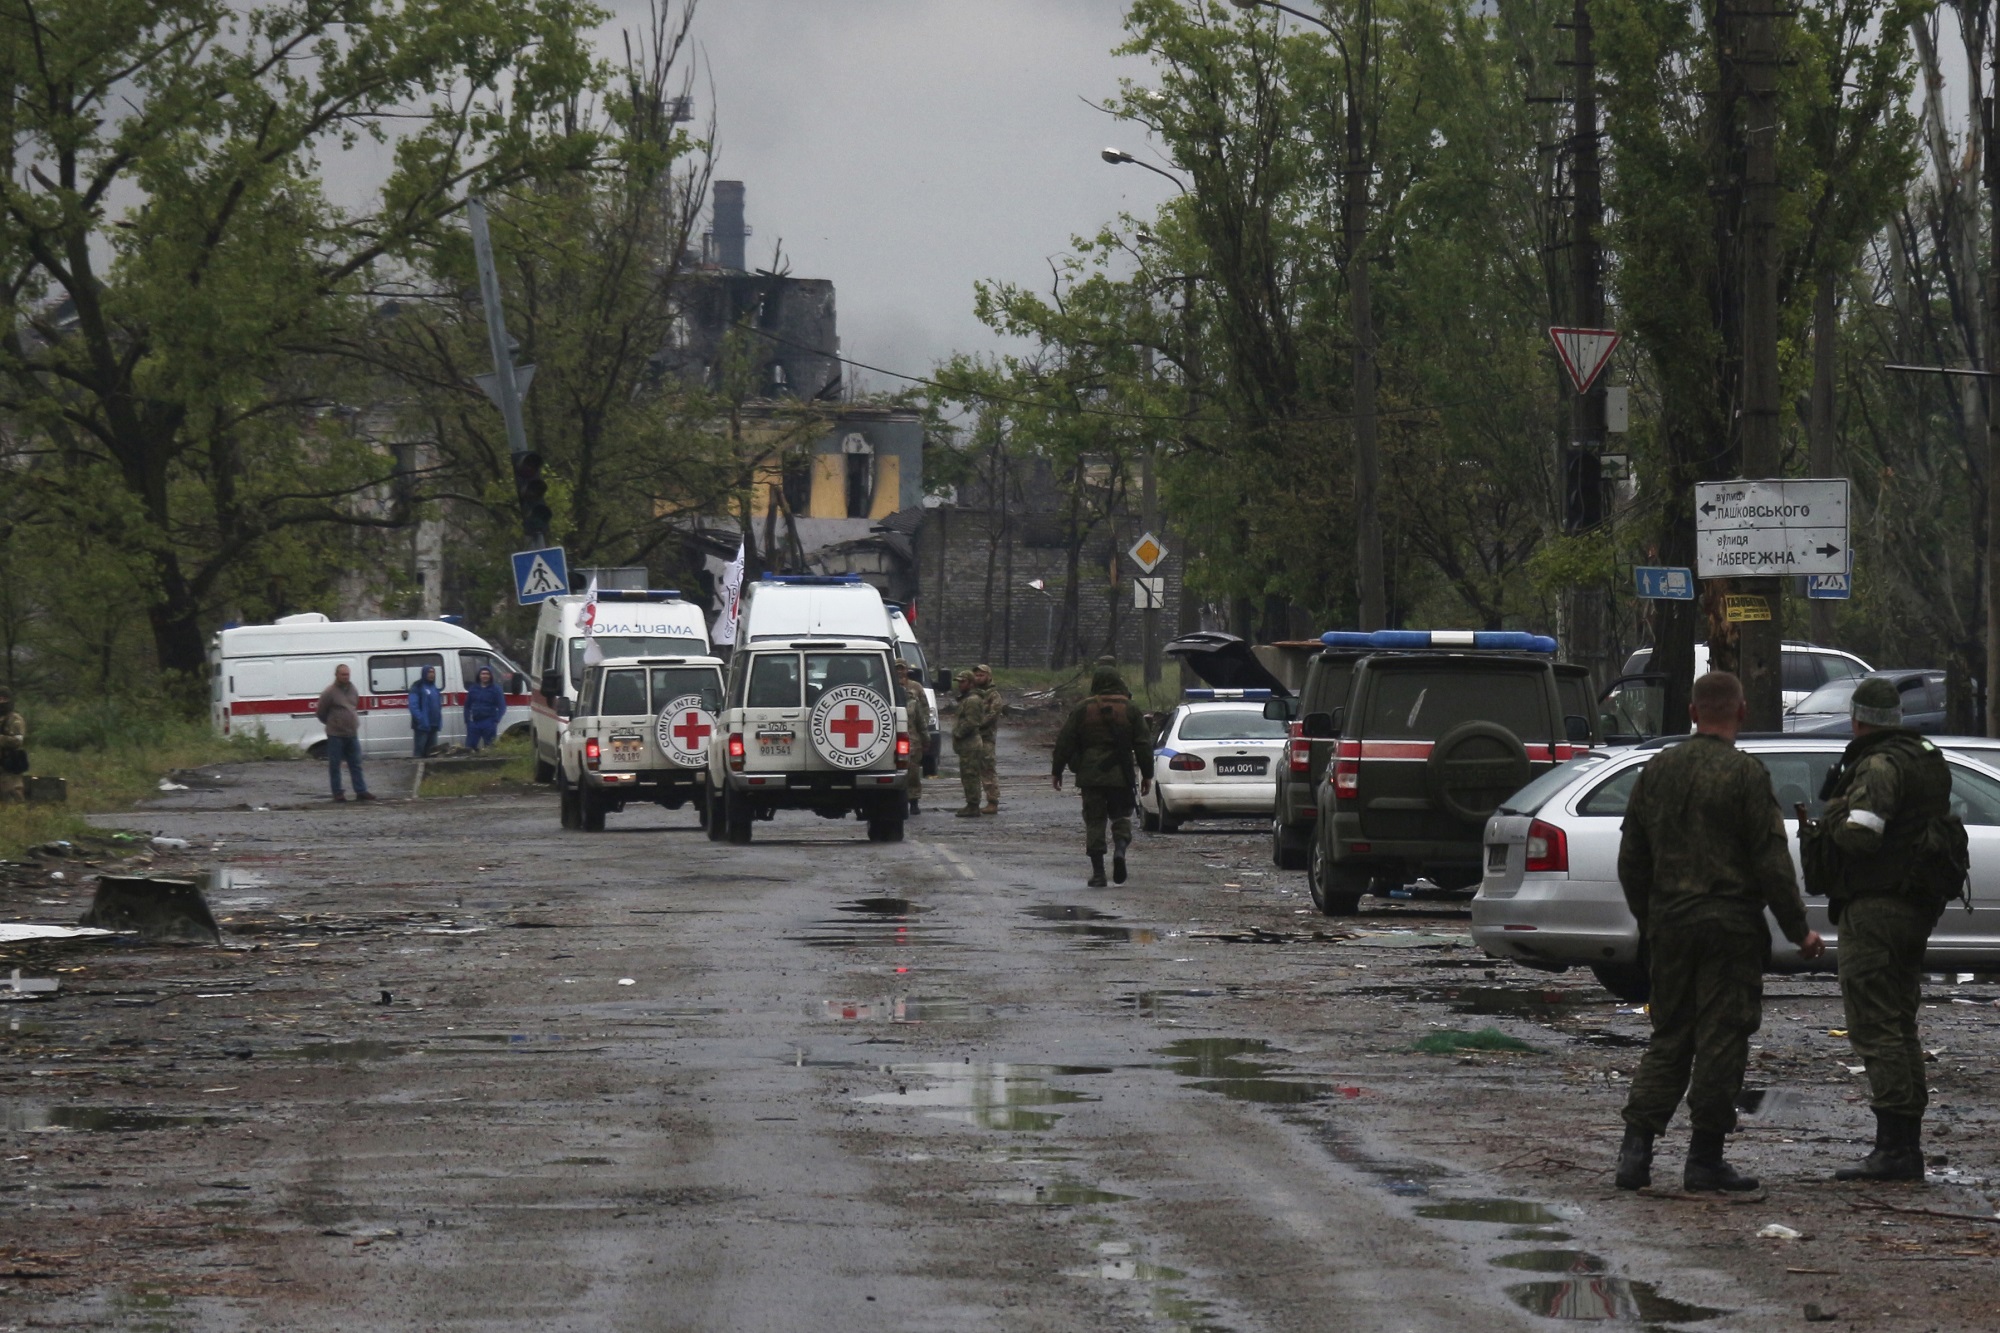 Ουκρανία-Ρωσία: Ο Ερυθρός Σταυρός σταματά προσωρινά τις επιχειρήσεις του στην Ουκρανία για λόγους ασφαλείας